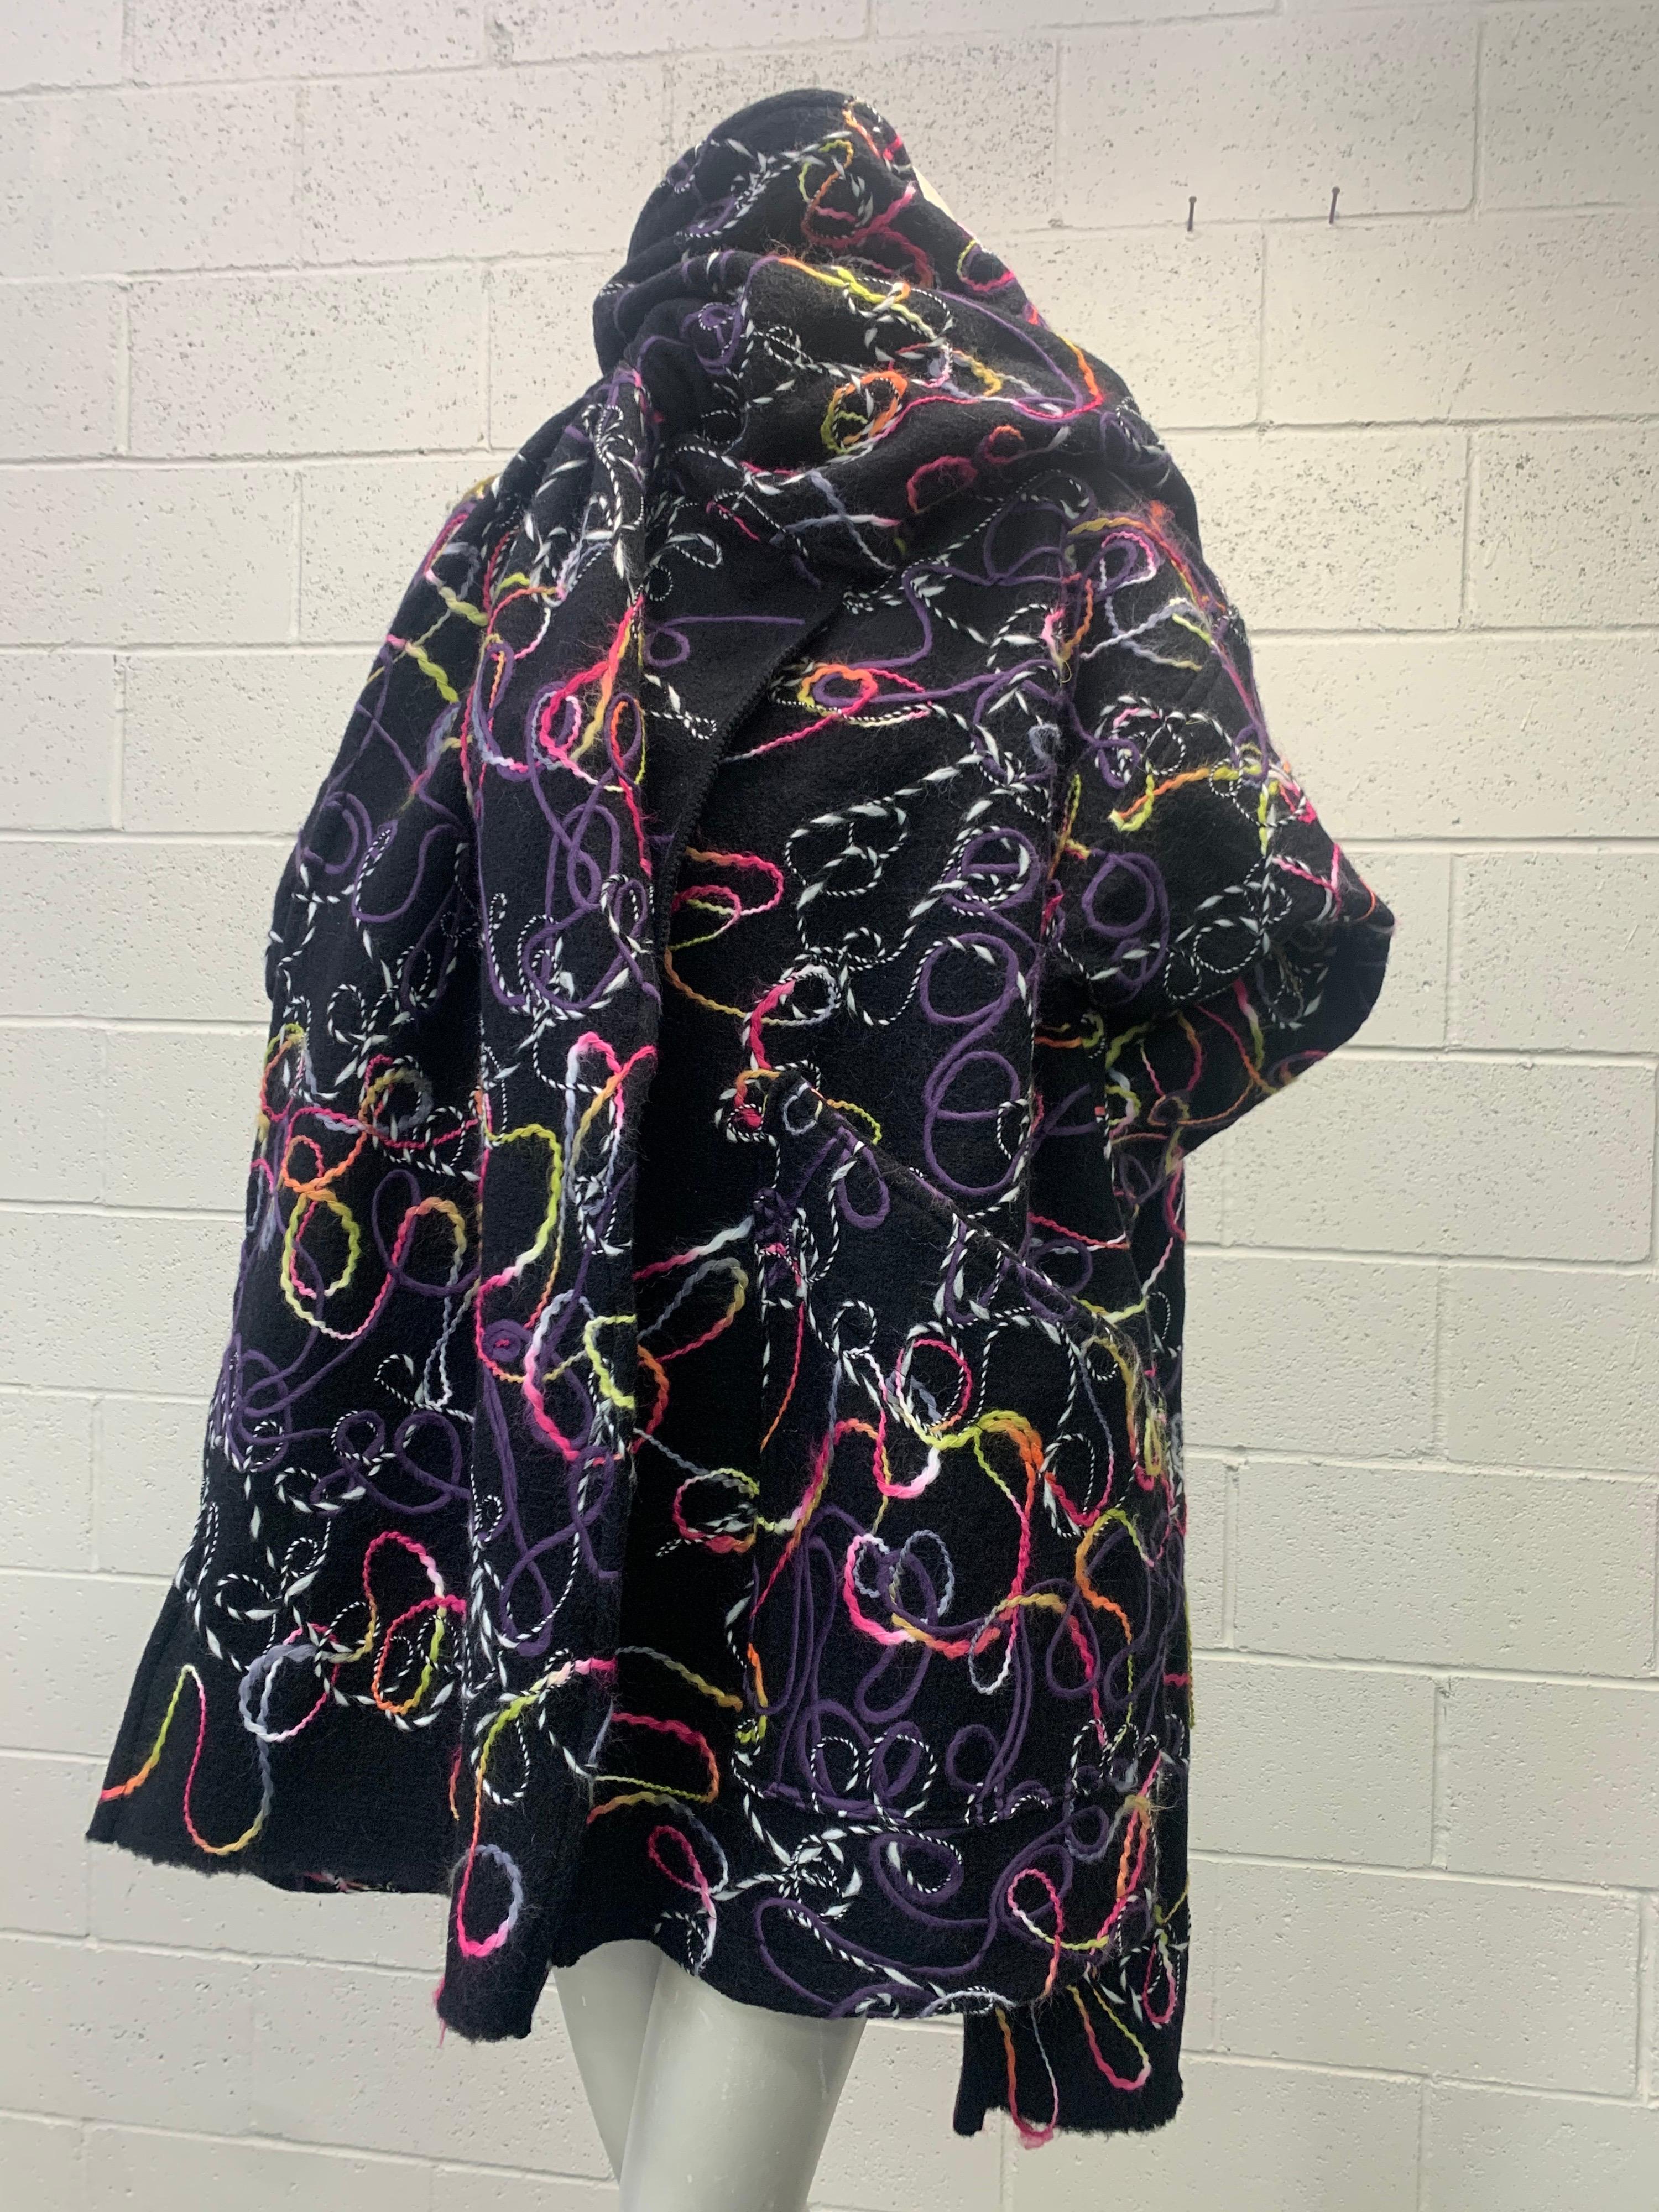 Inspiriert vom Stil der 80er Jahre entwirft Torso Creations meisterhaft diesen übergroßen Mantel aus Deadstock-Stoff, der in Italien hergestellt wird. Dieser schwere, gefilzte Wollstoff zeichnet sich durch Wirbel aus leuchtend bunten, gewebten